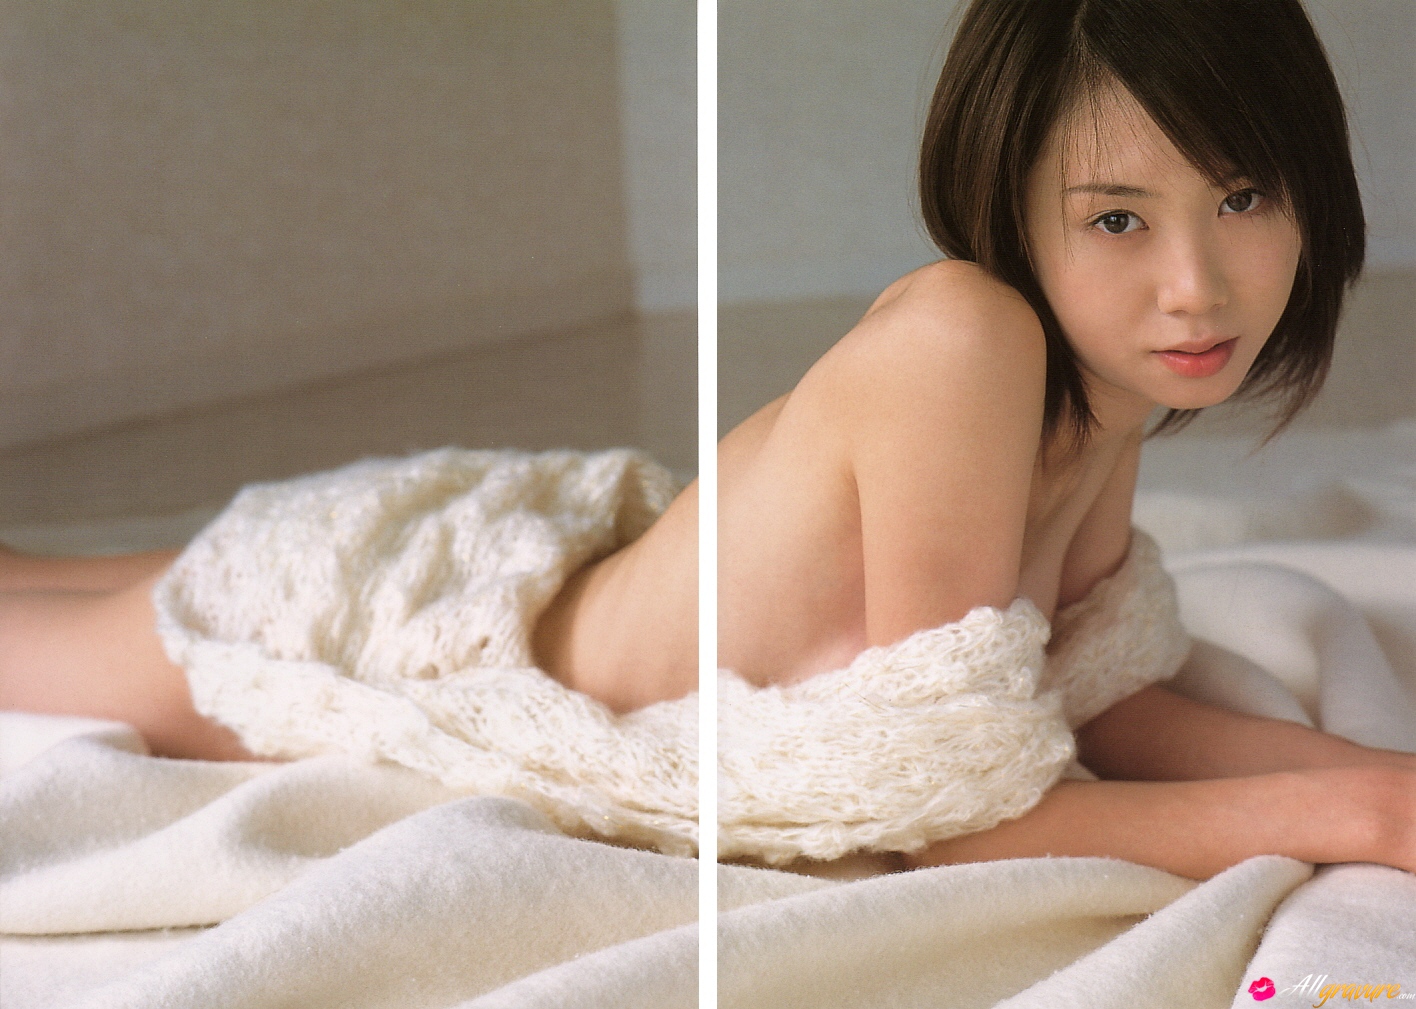 Emi Hasegawa By All Gravure Erotic Beauties